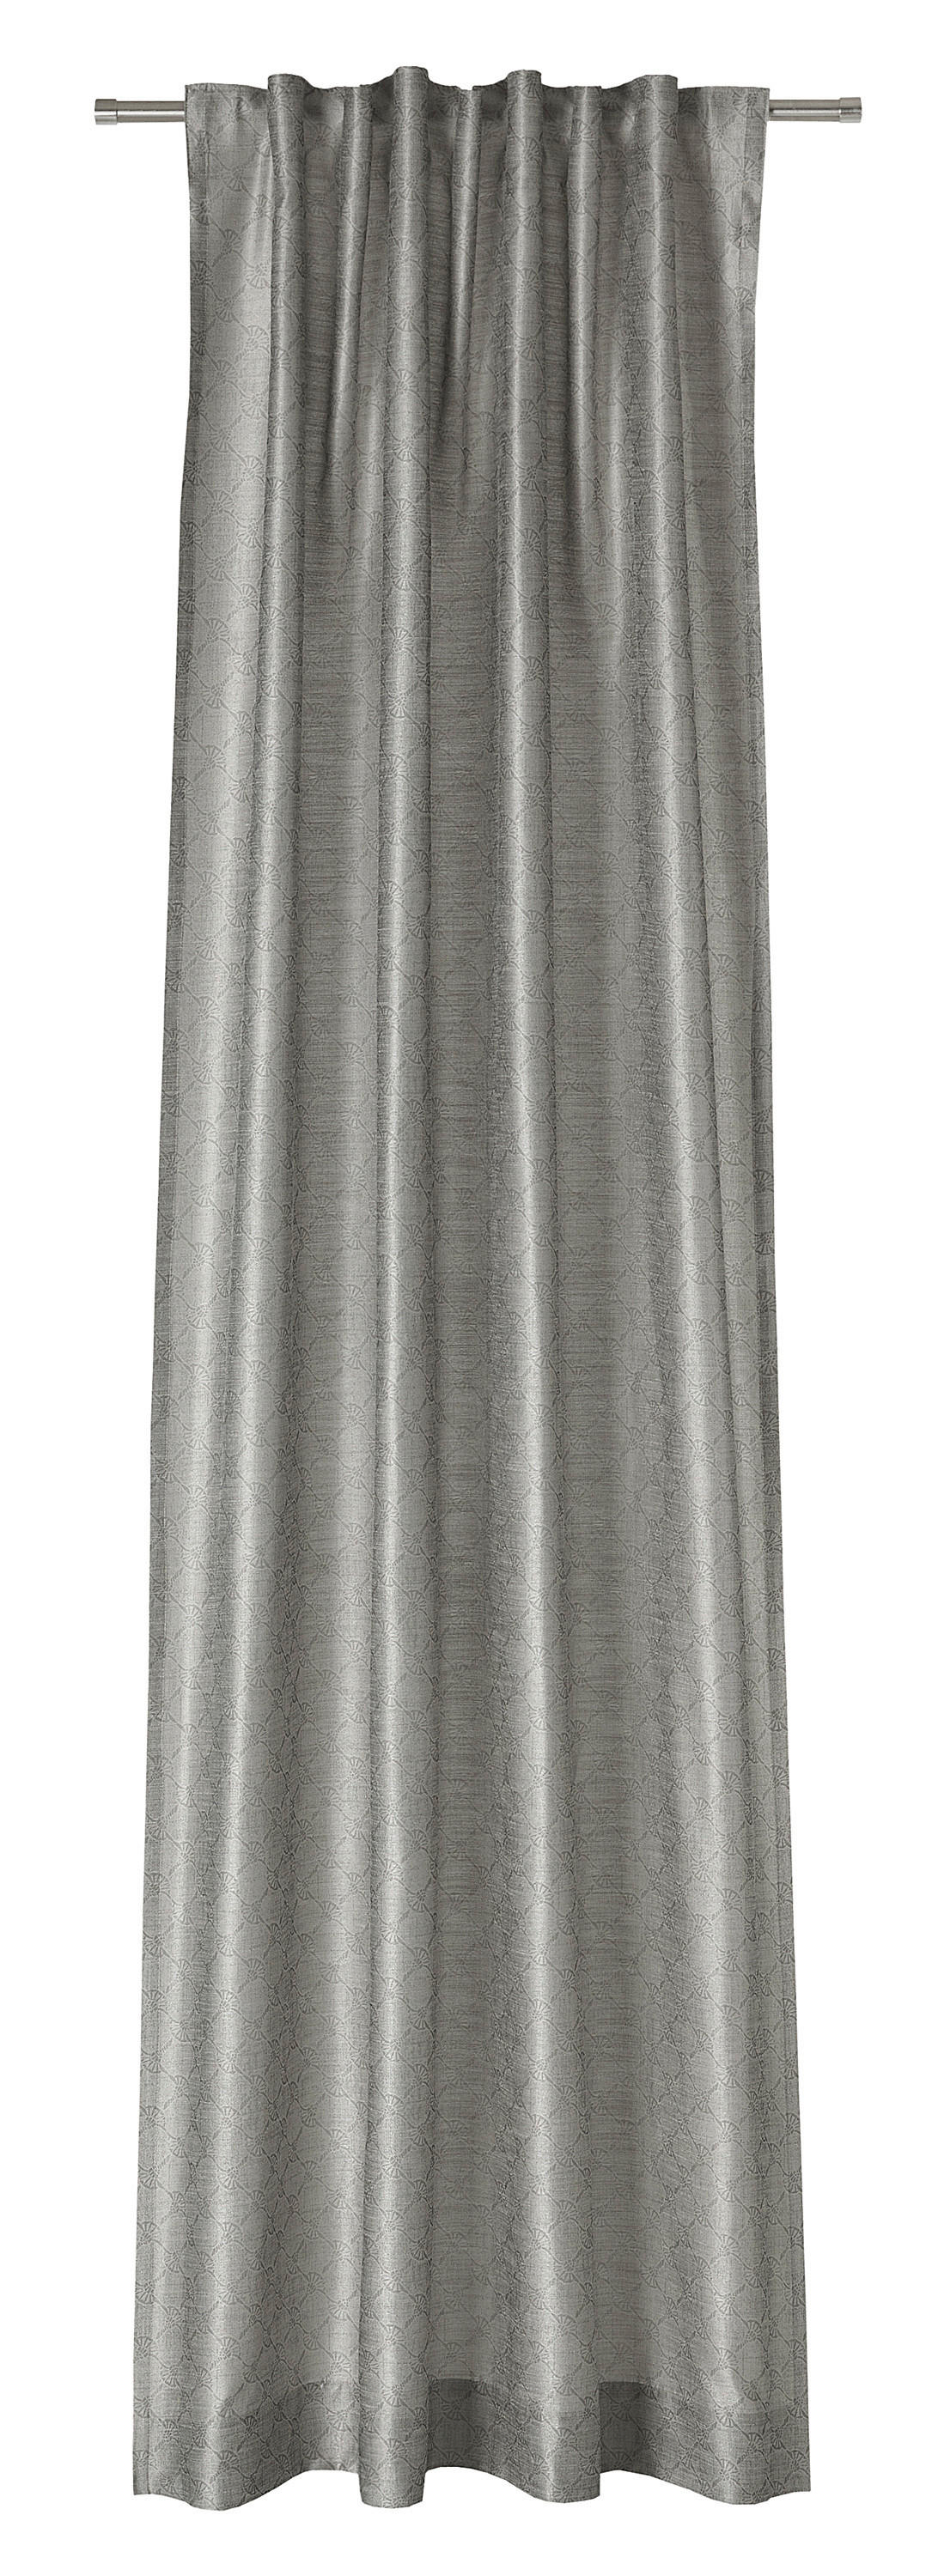 VORHANGSCHAL Silk Allover blickdicht 130/250 cm   - Grau, Design, Textil (130/250cm) - Joop!